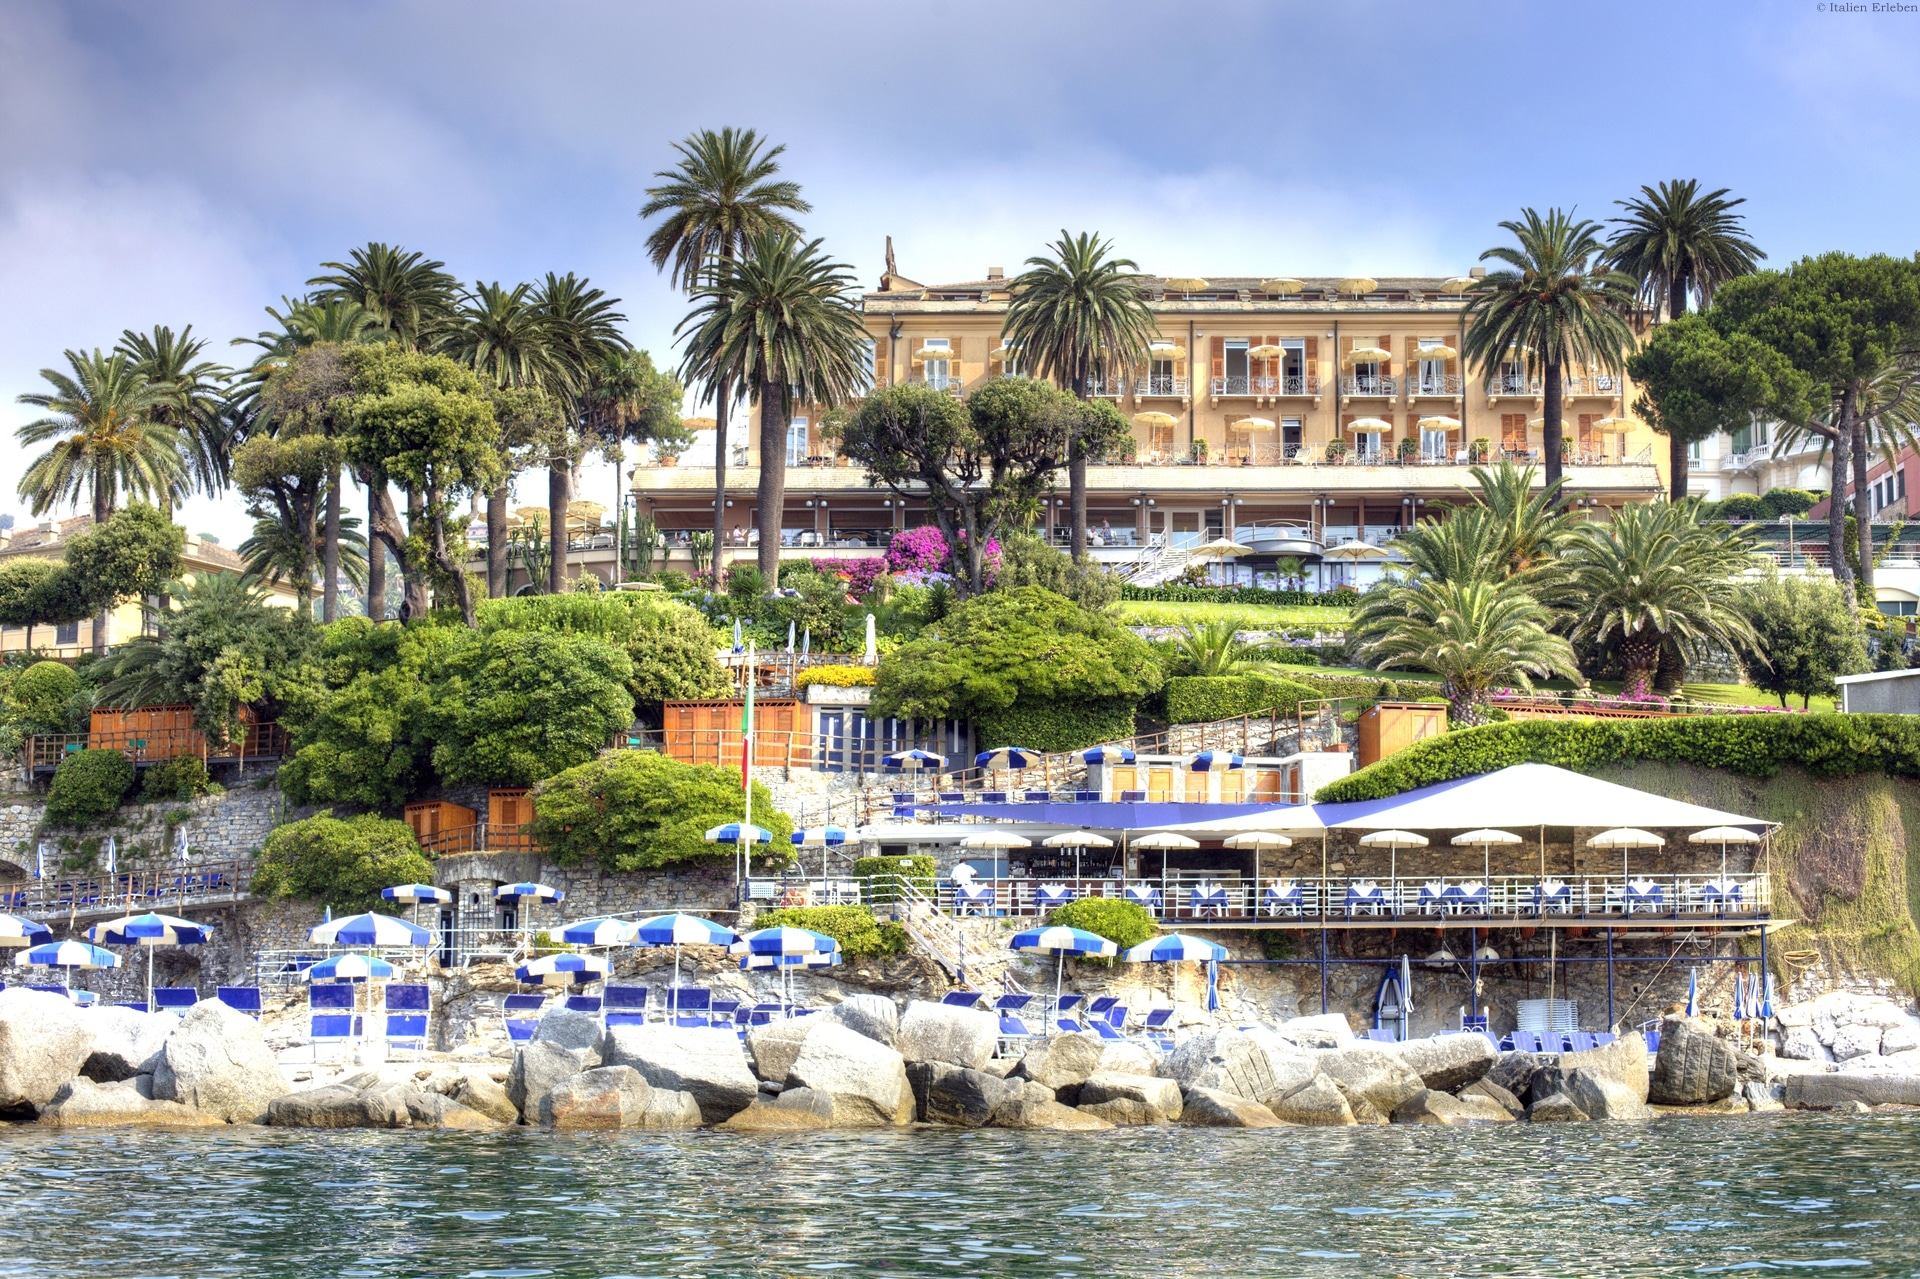 Ligurien Hotel Continental Santa Margherita Ligure Park Garten Blumen Riviera Meer Küste Strand